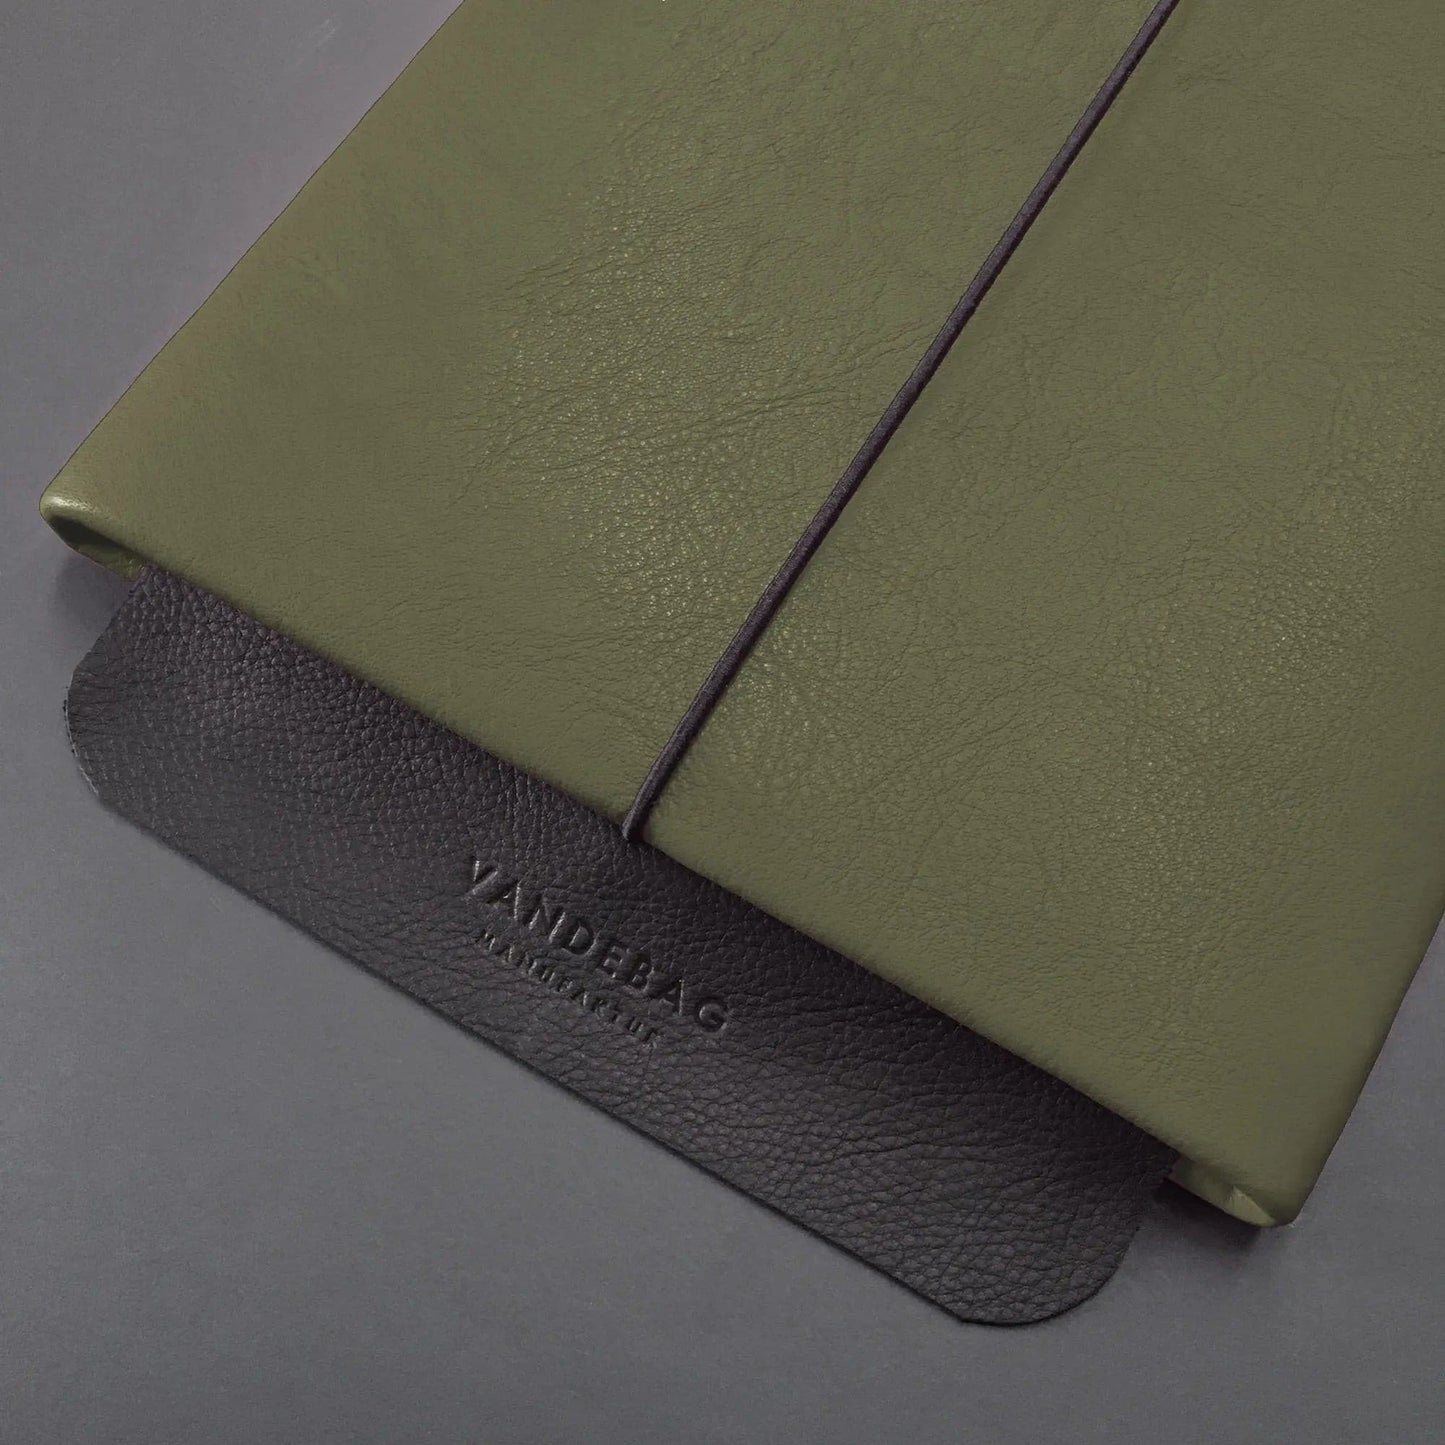 grüne Macbookhülle mit schwarzer Verschlussklappe mit Vandebag Prägung